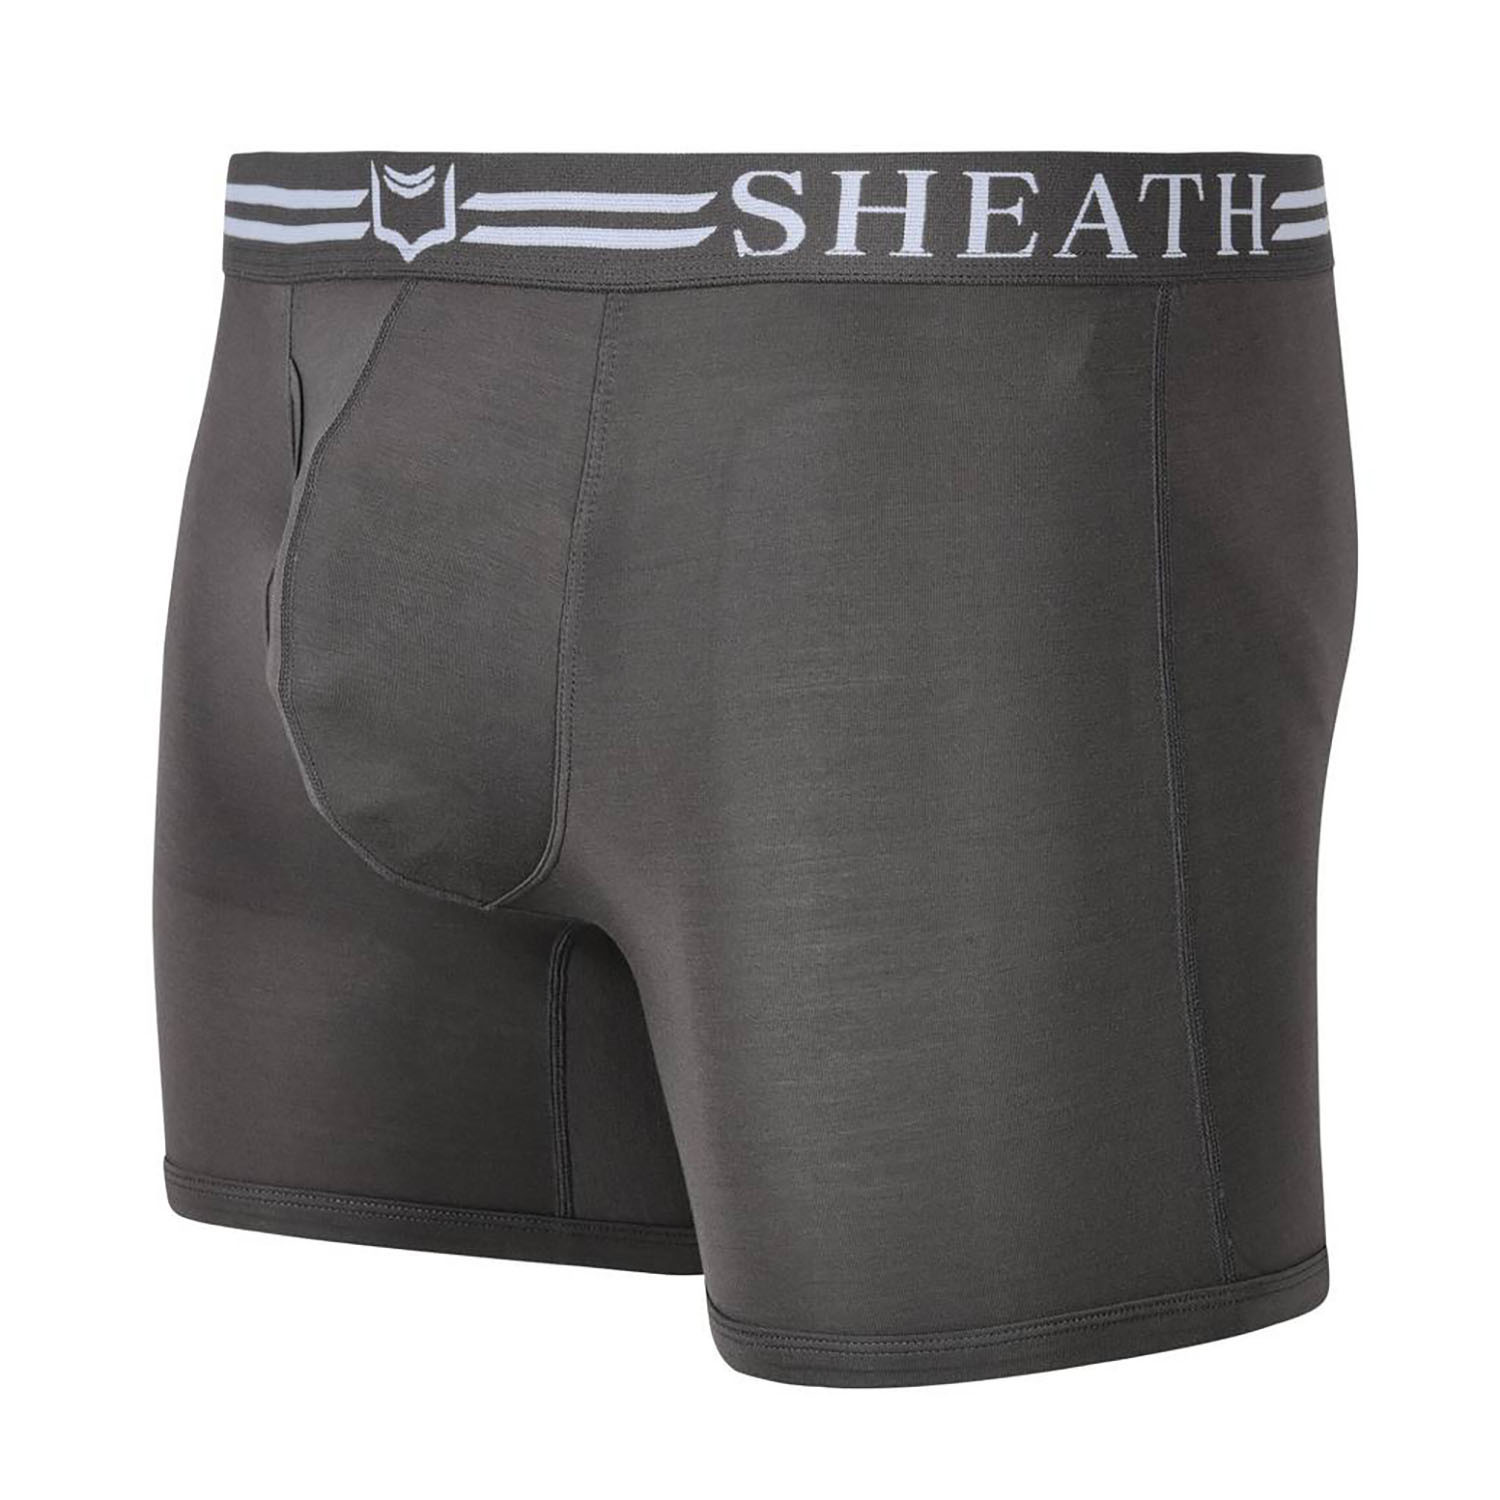 Sheath 4.0 Dual Pouch Boxer Brief // Gray (X-Large) - Sheath Underwear ...